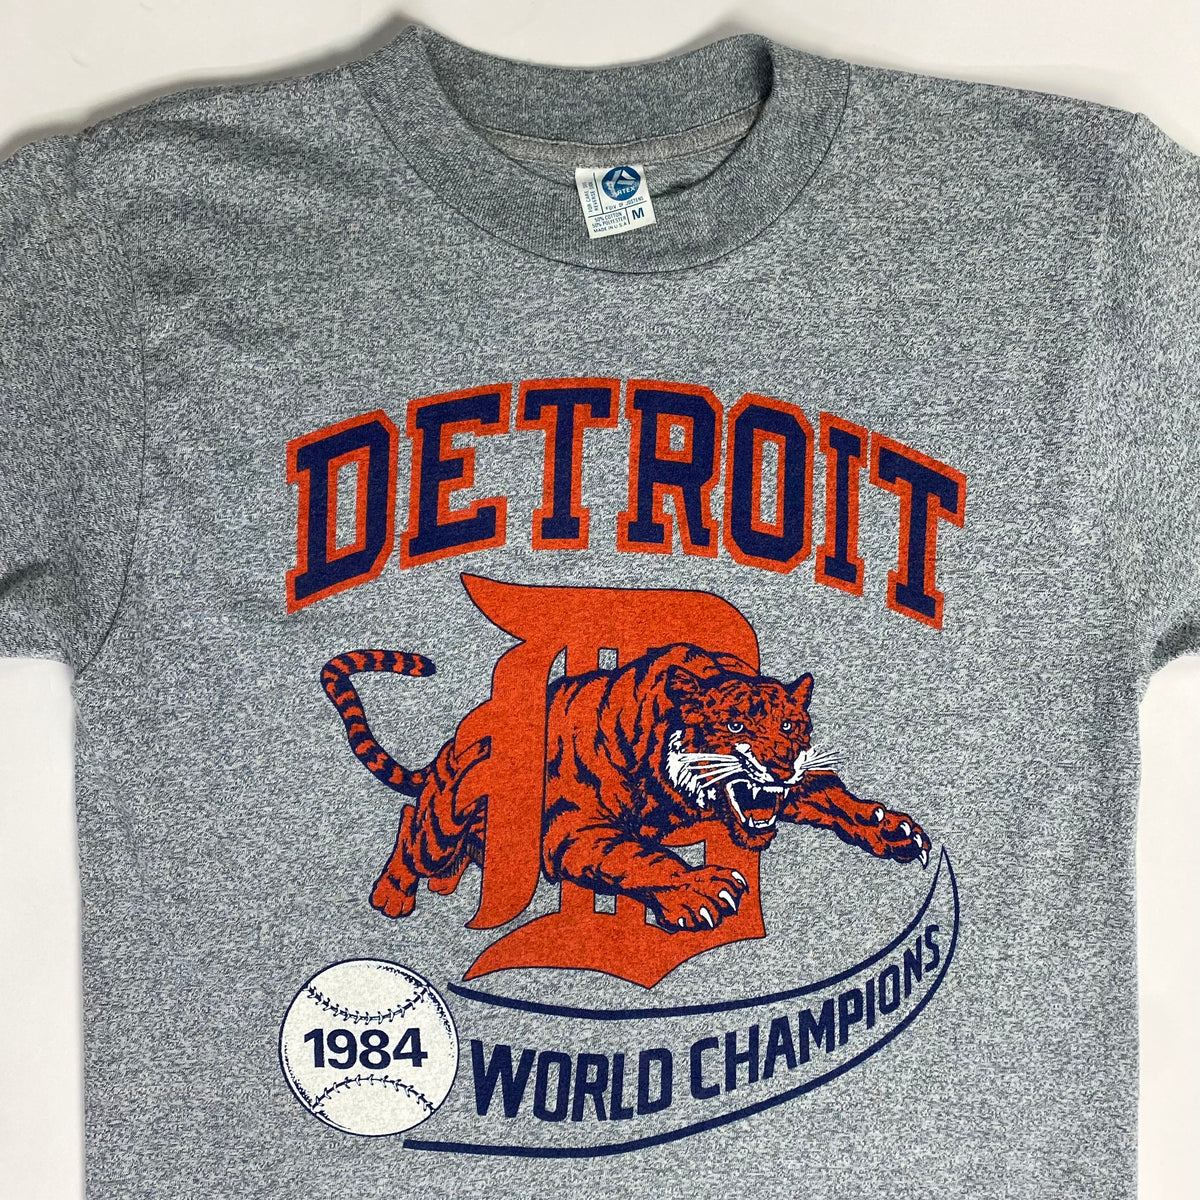 1984 Detroit Tigers Archives - Vintage Detroit Collection